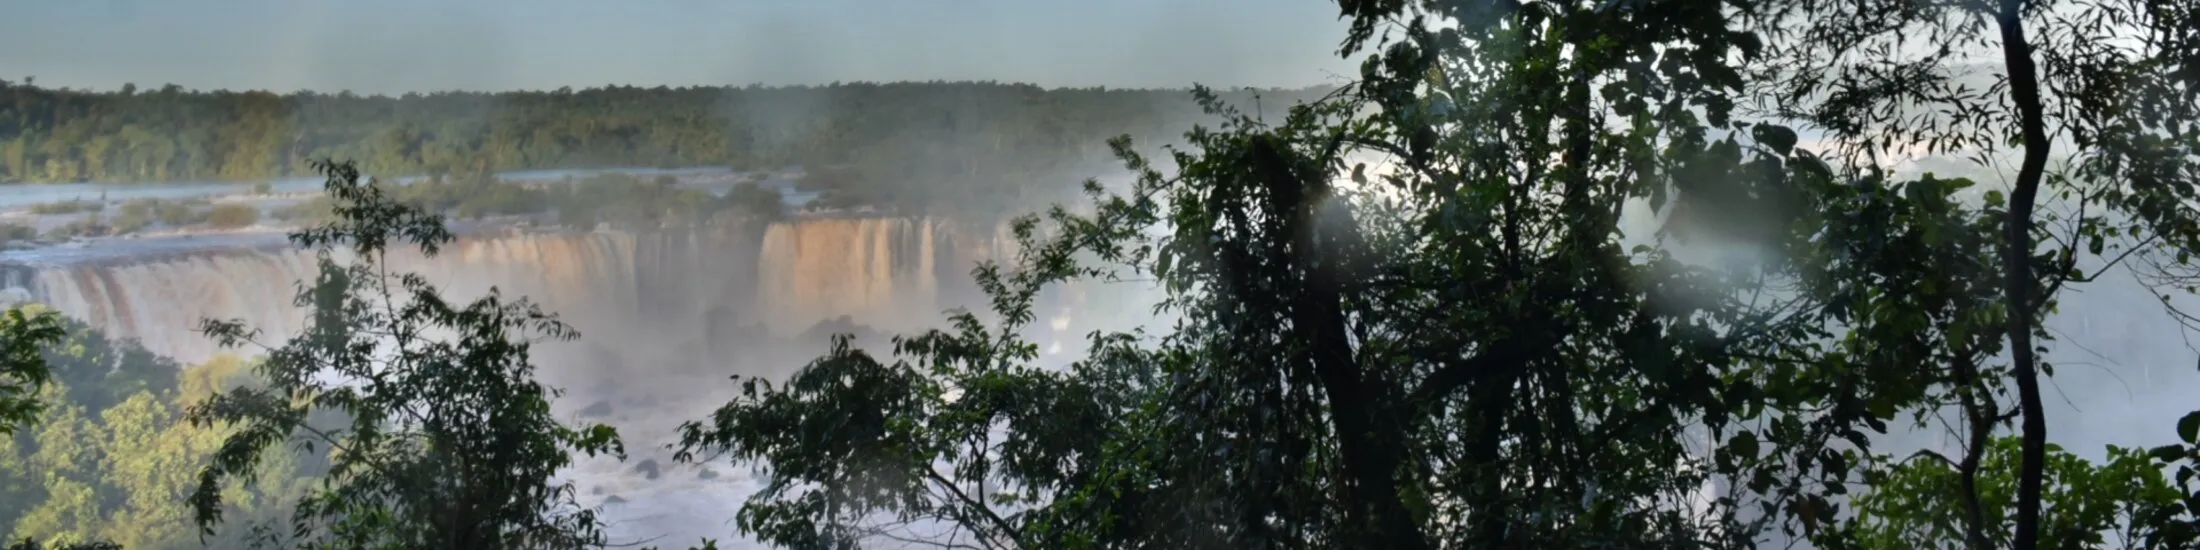 Iguazu Wasserfälle von der brasilianischen Seite